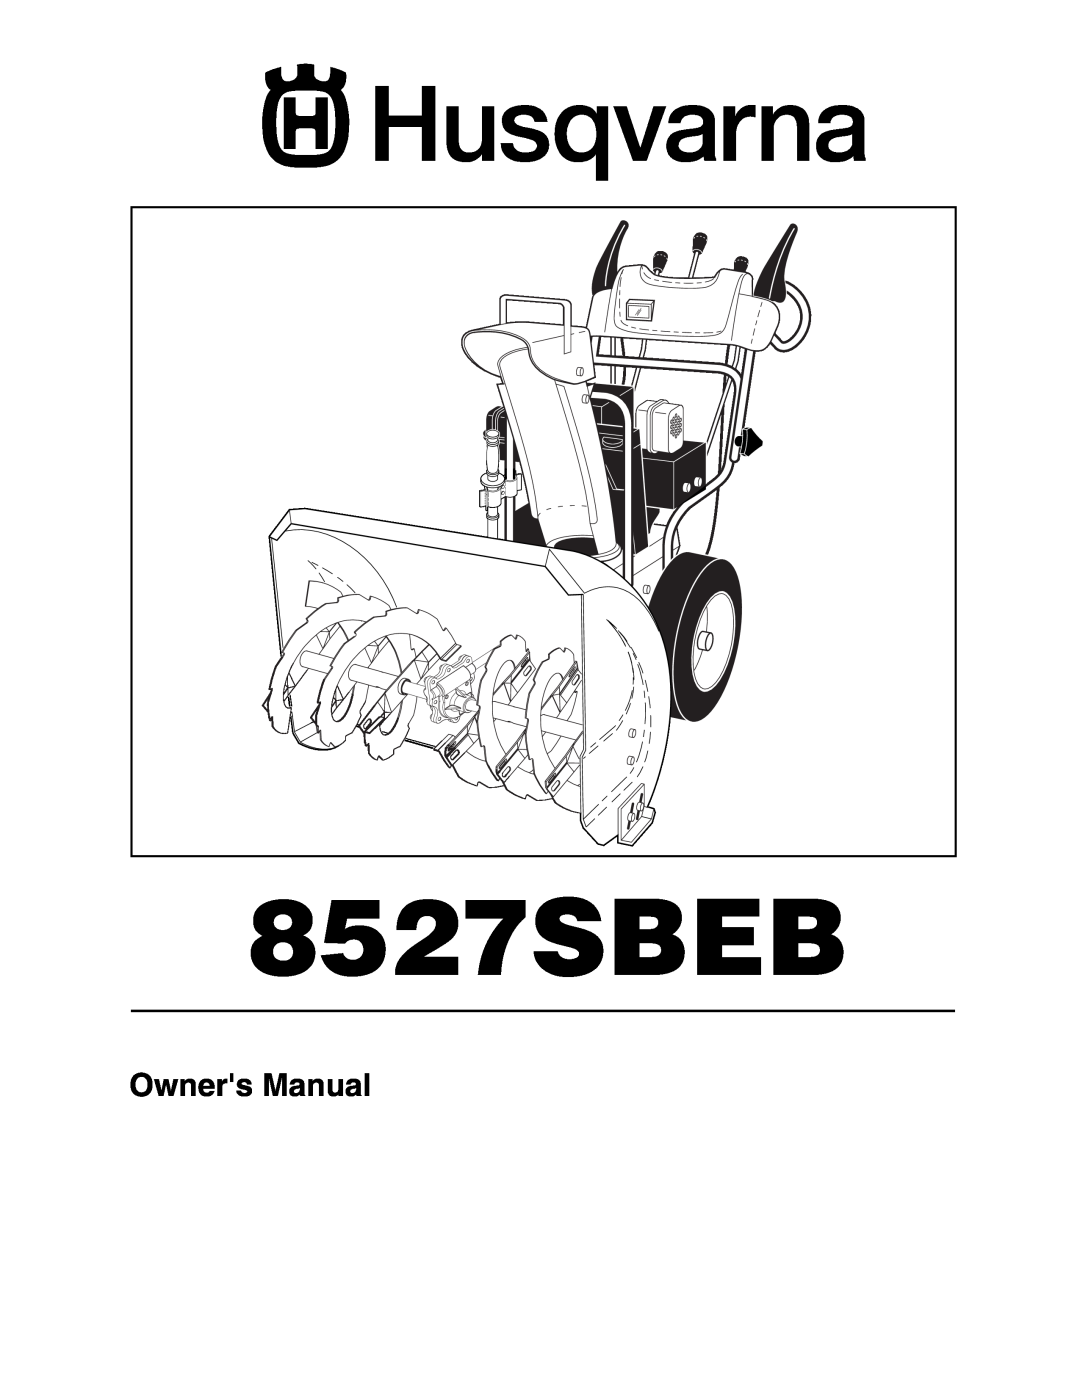 Husqvarna 8527SBEB owner manual 